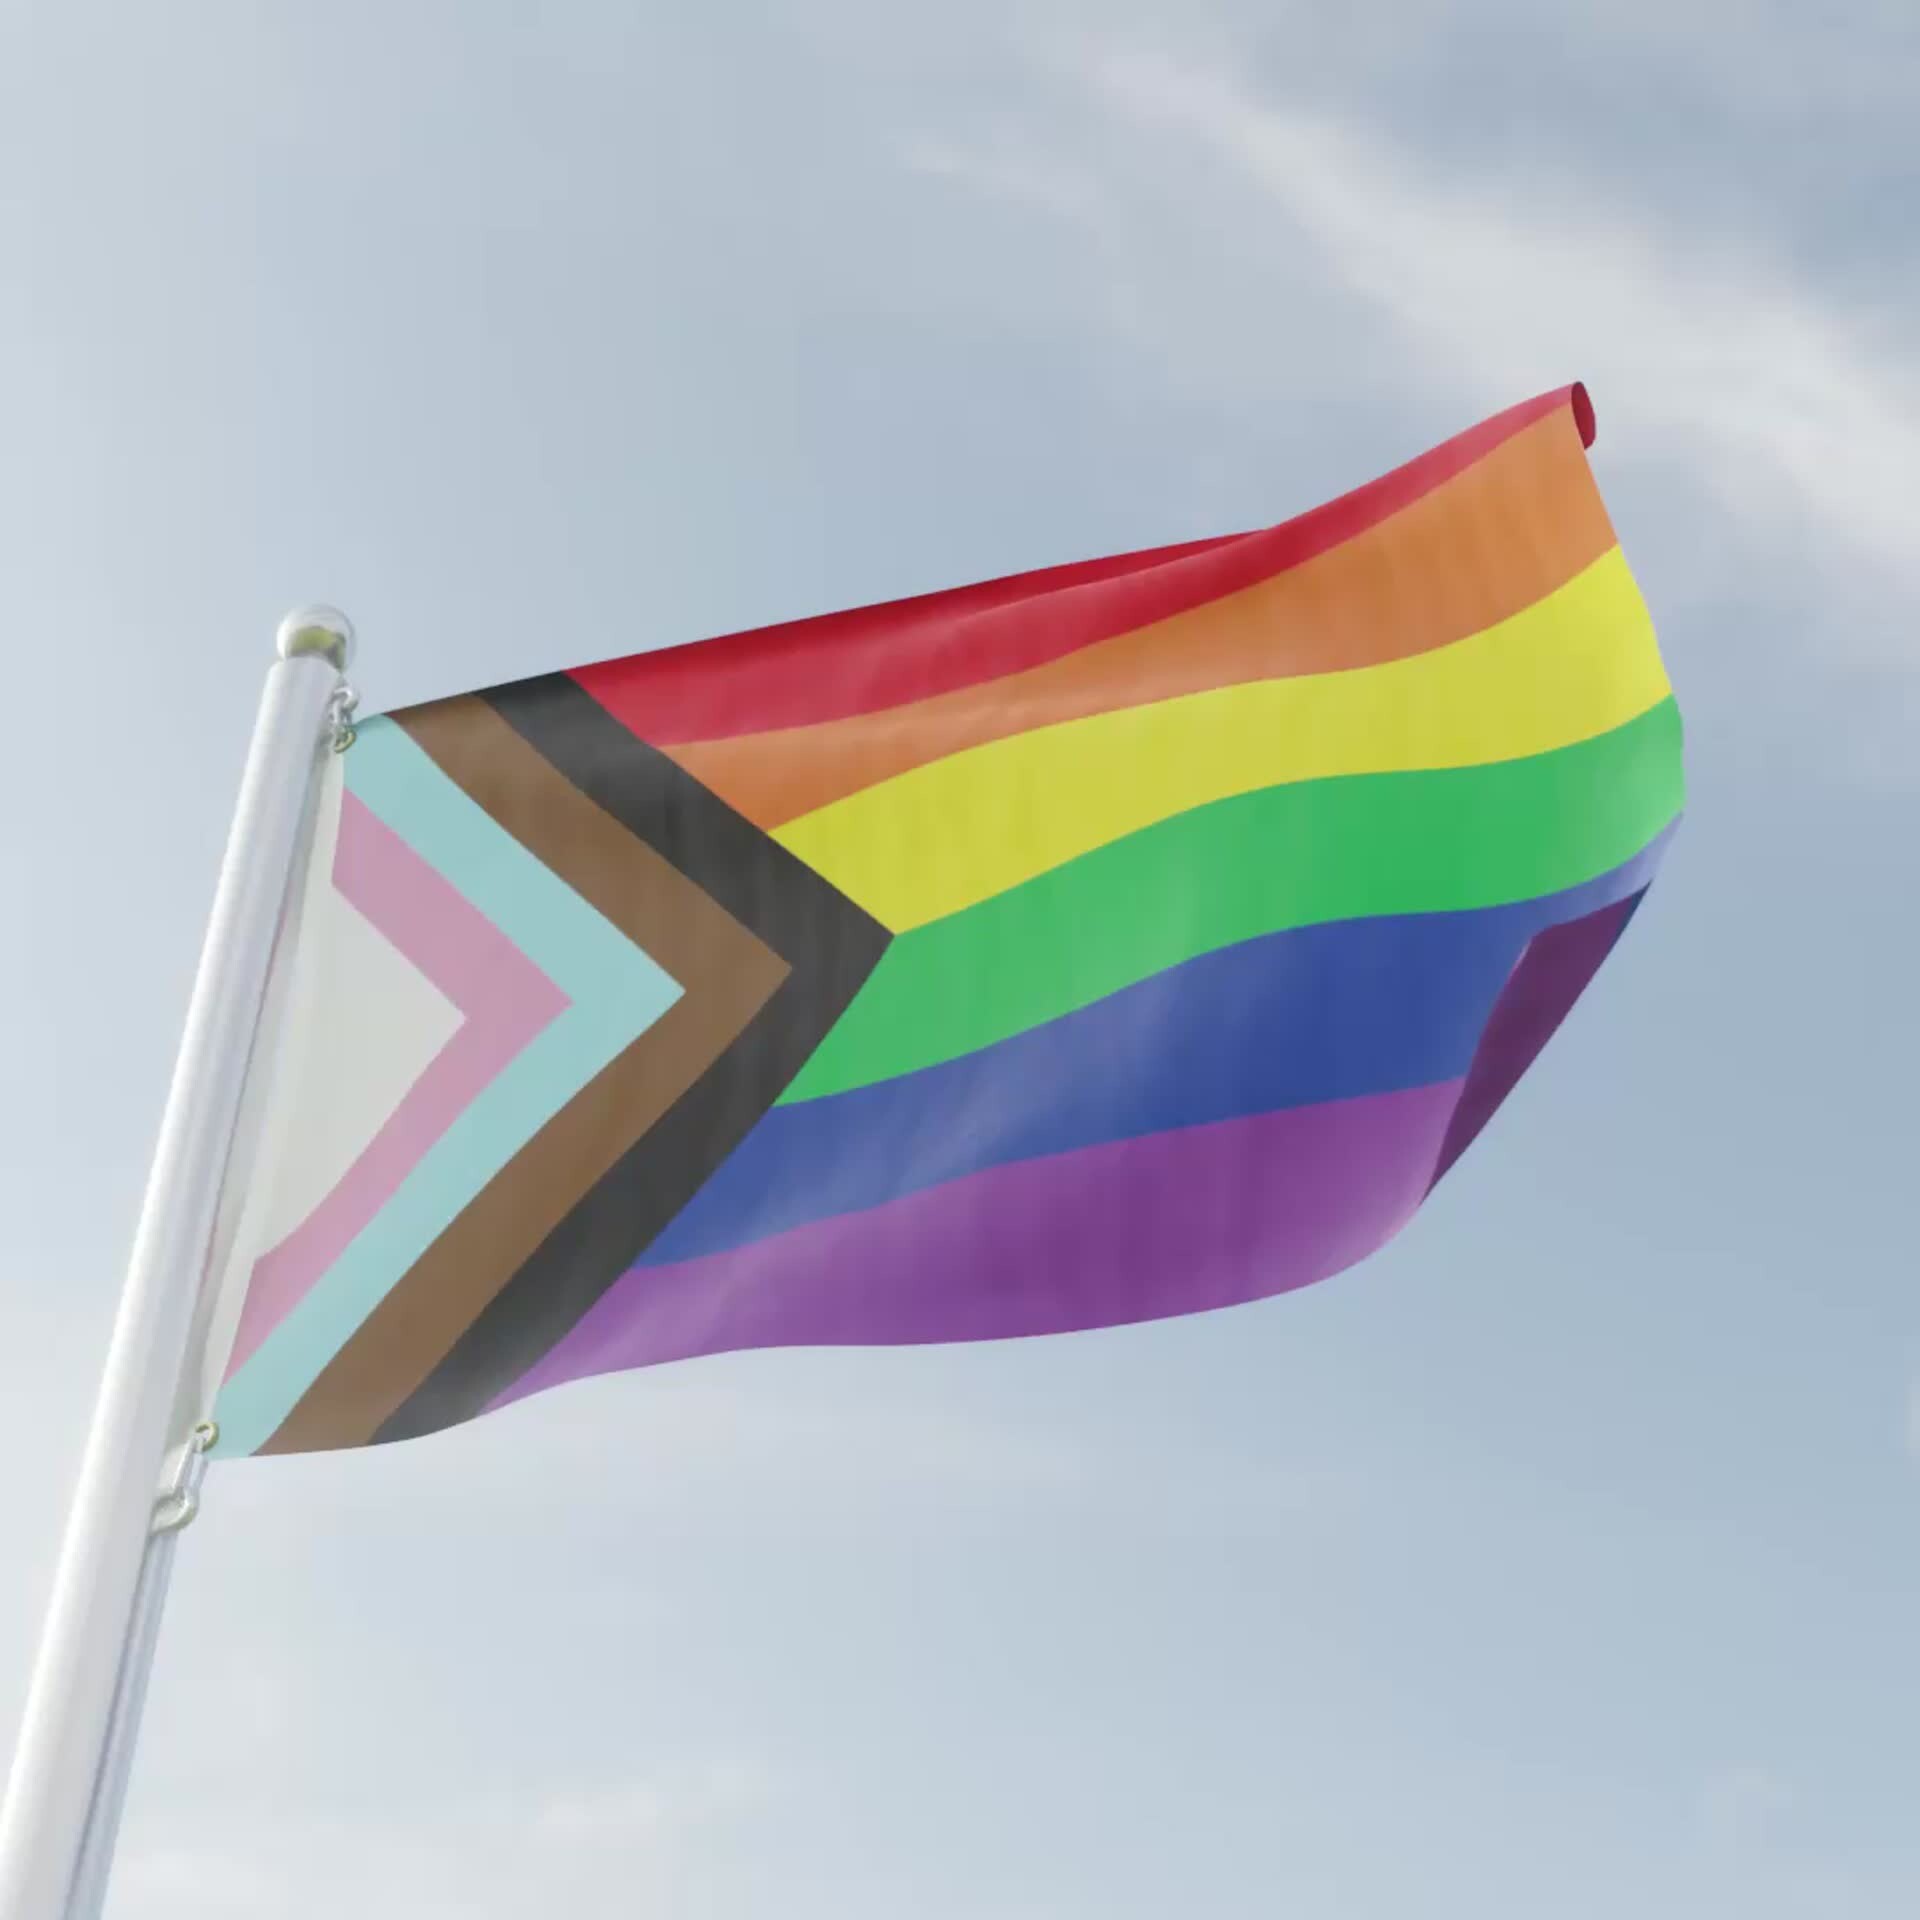 ArtStation - Pride Flag in Wind